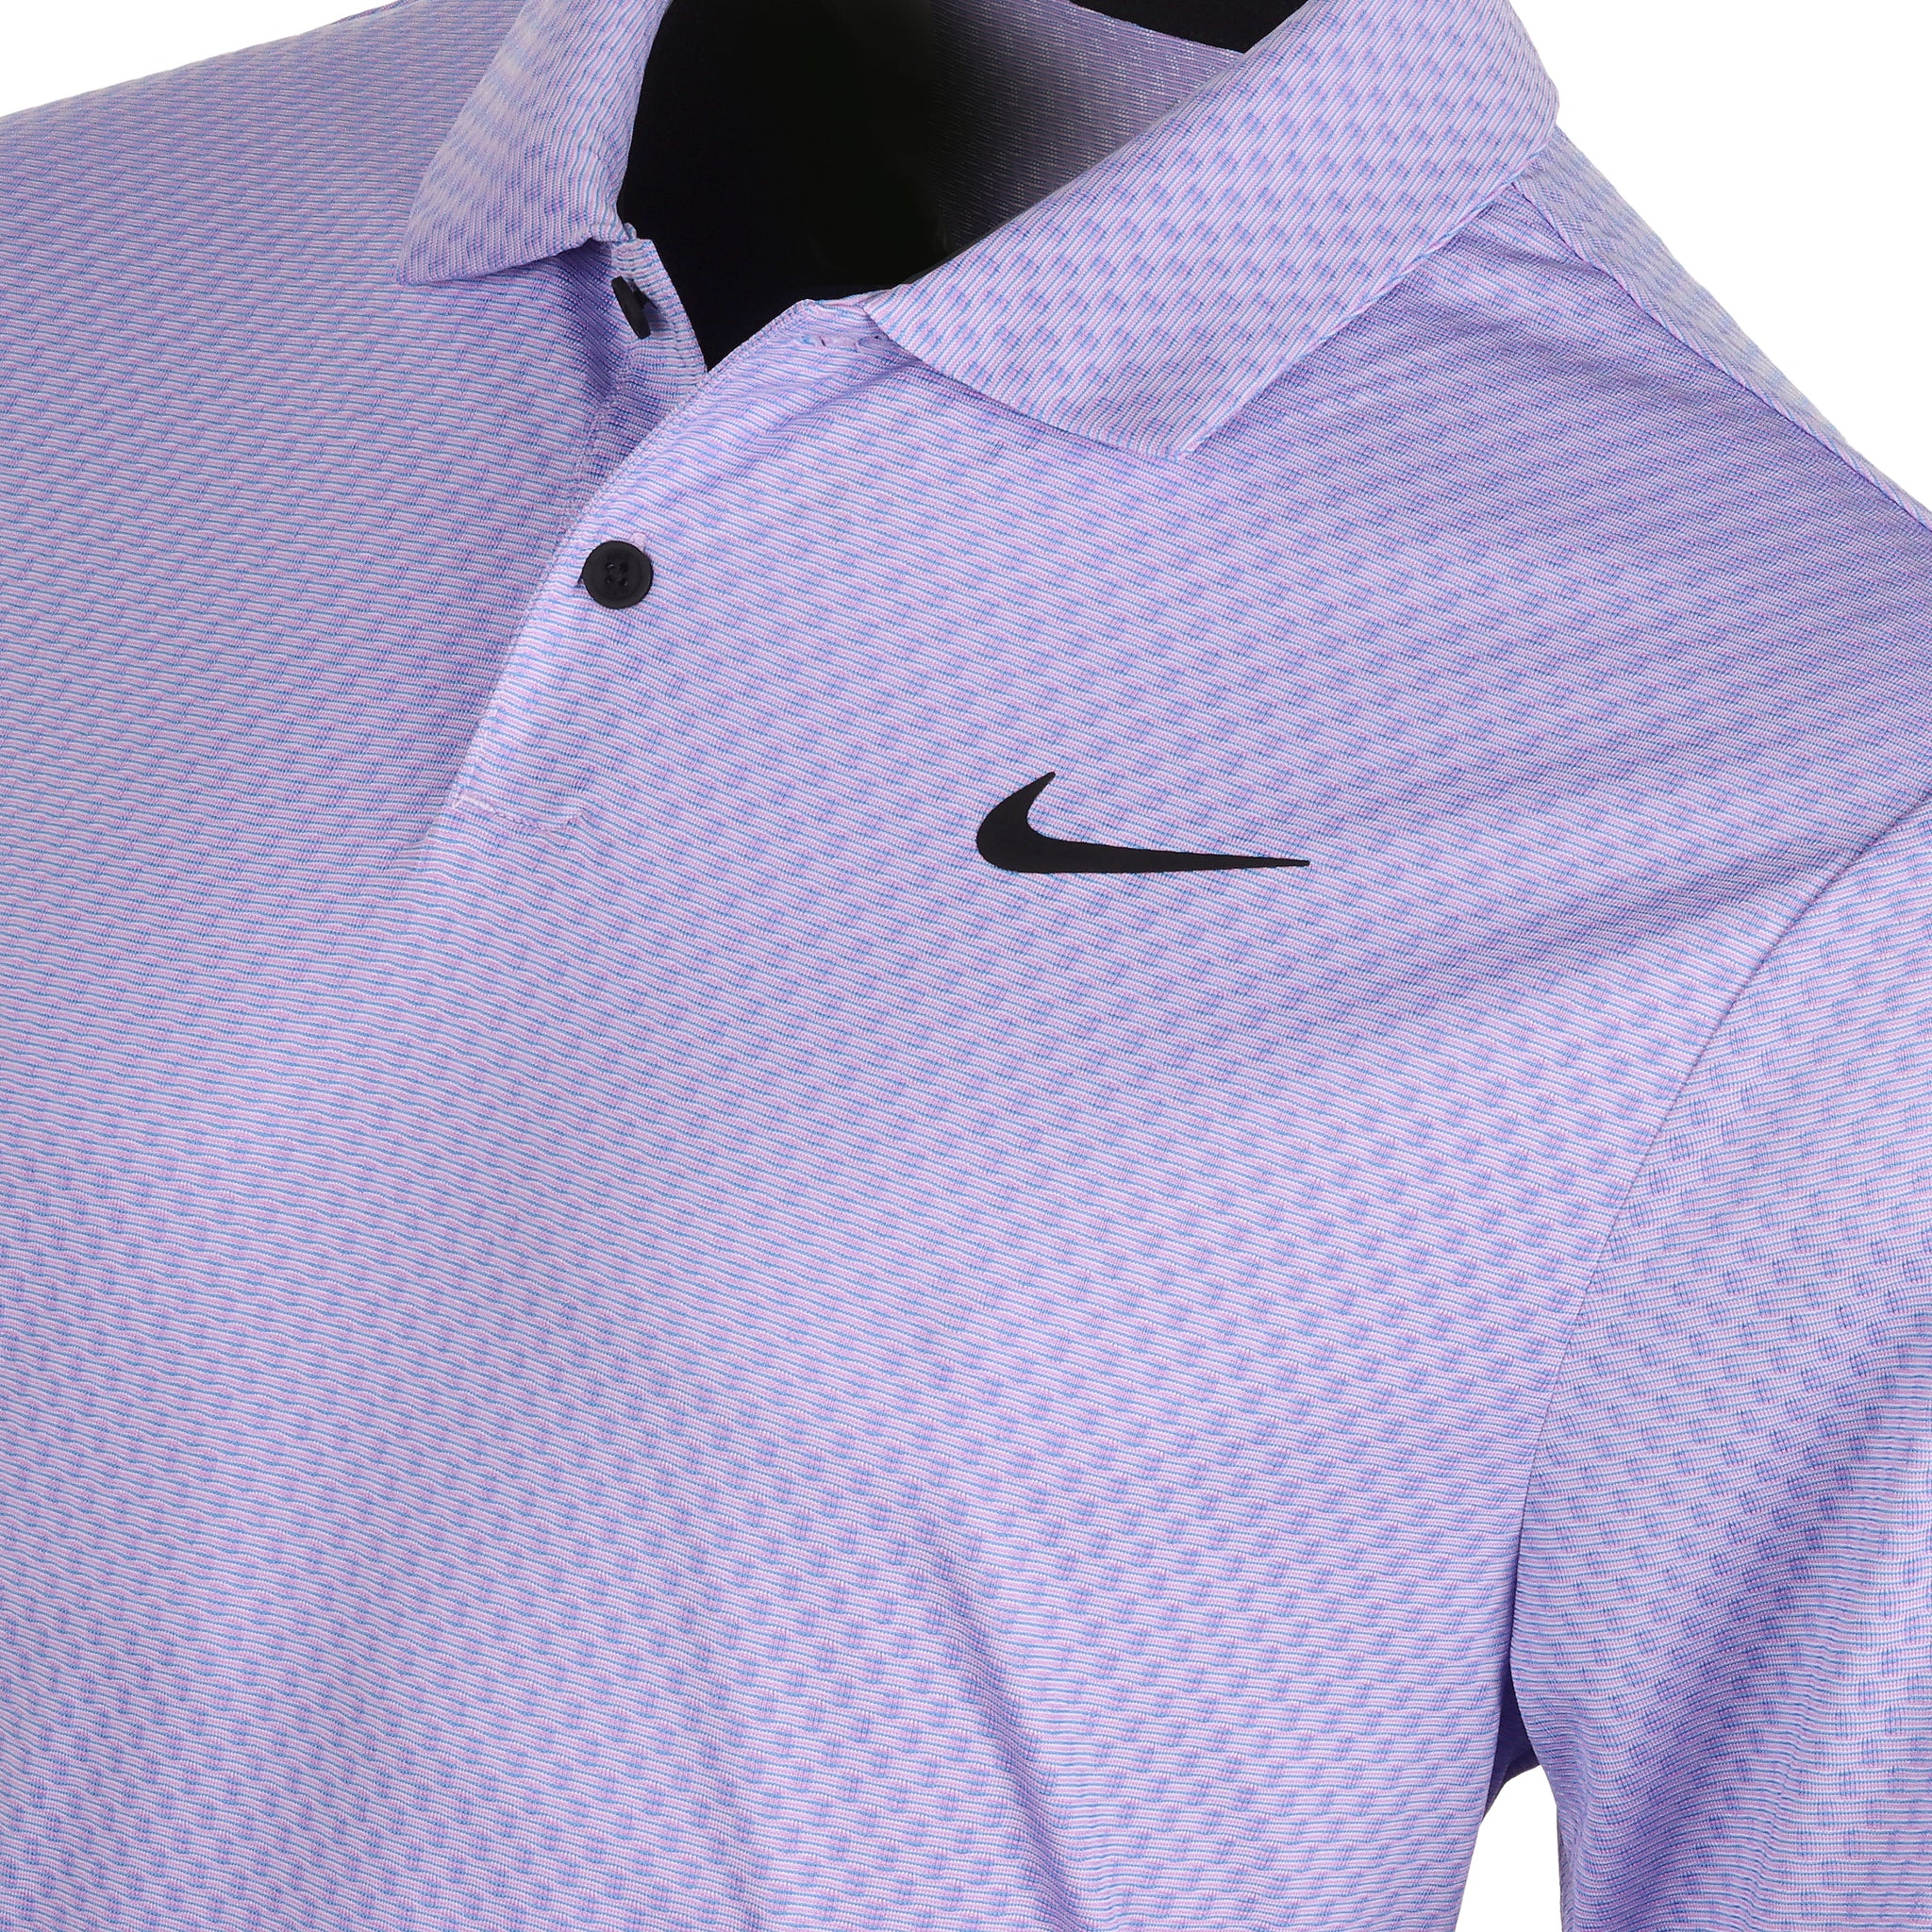 Nike Golf Dri-Fit Tour Jacquard Shirt